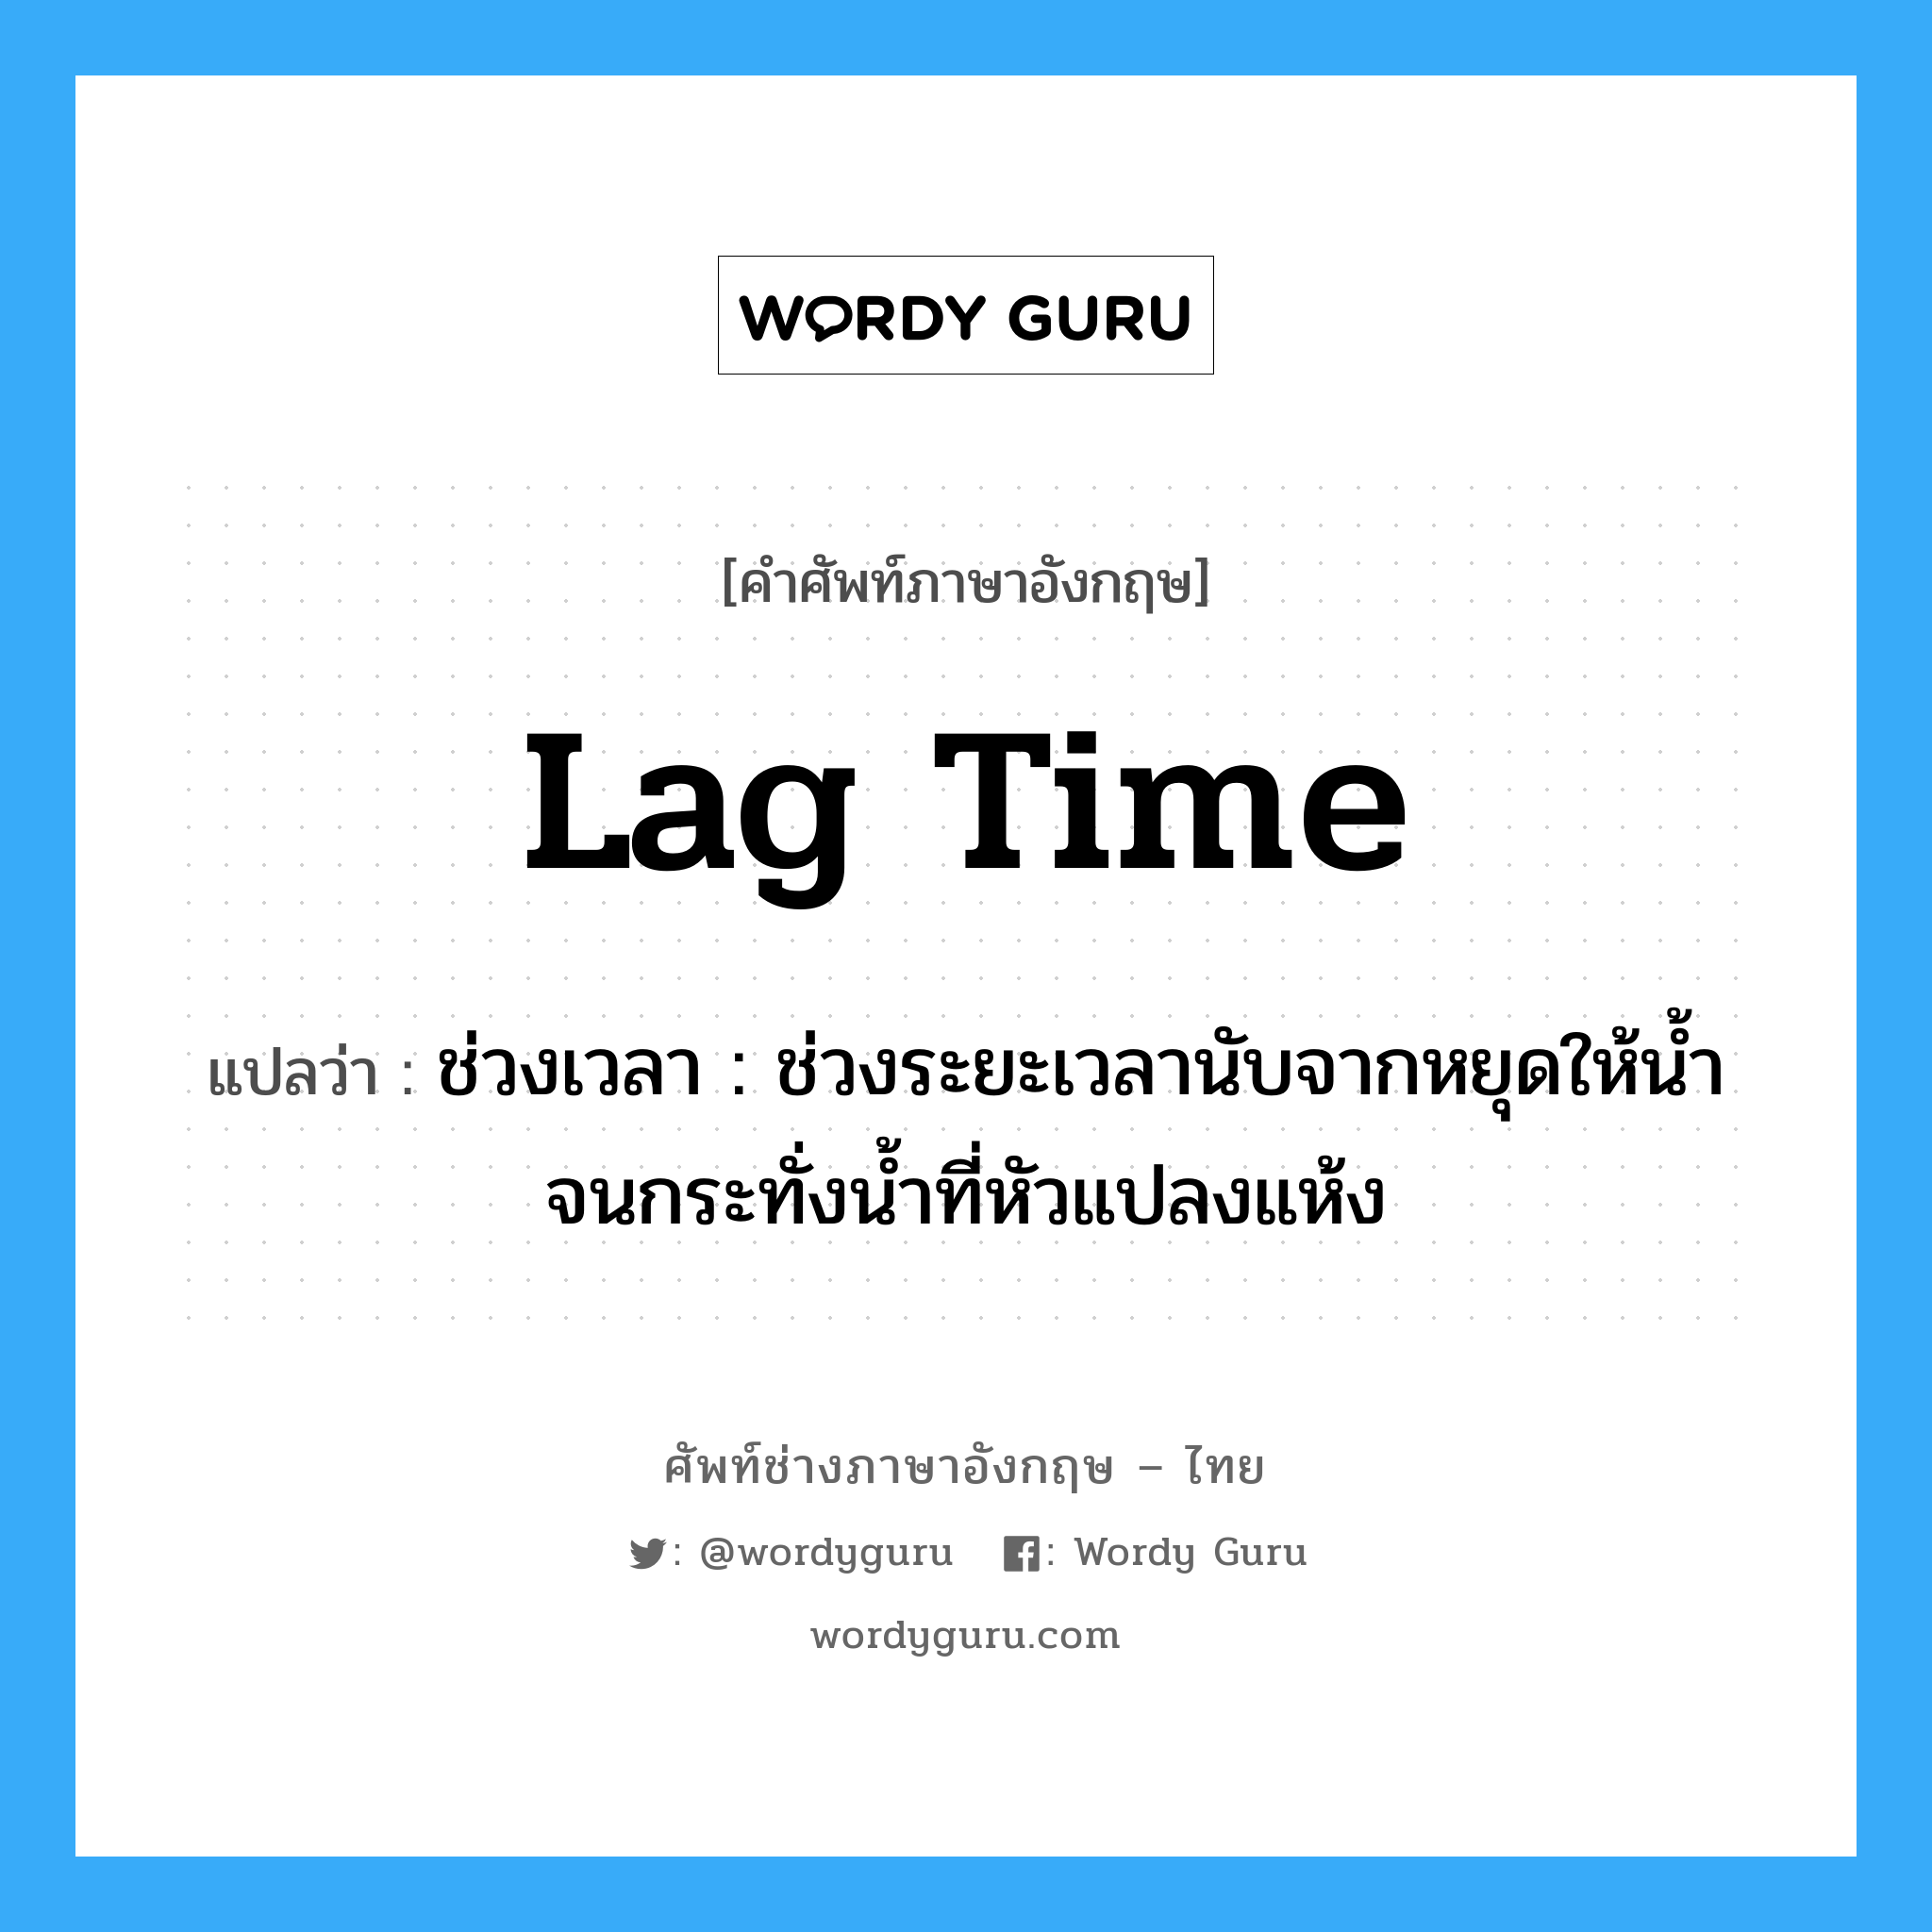 lag time แปลว่า?, คำศัพท์ช่างภาษาอังกฤษ - ไทย lag time คำศัพท์ภาษาอังกฤษ lag time แปลว่า ช่วงเวลา : ช่วงระยะเวลานับจากหยุดให้น้ำจนกระทั่งน้ำที่หัวแปลงแห้ง